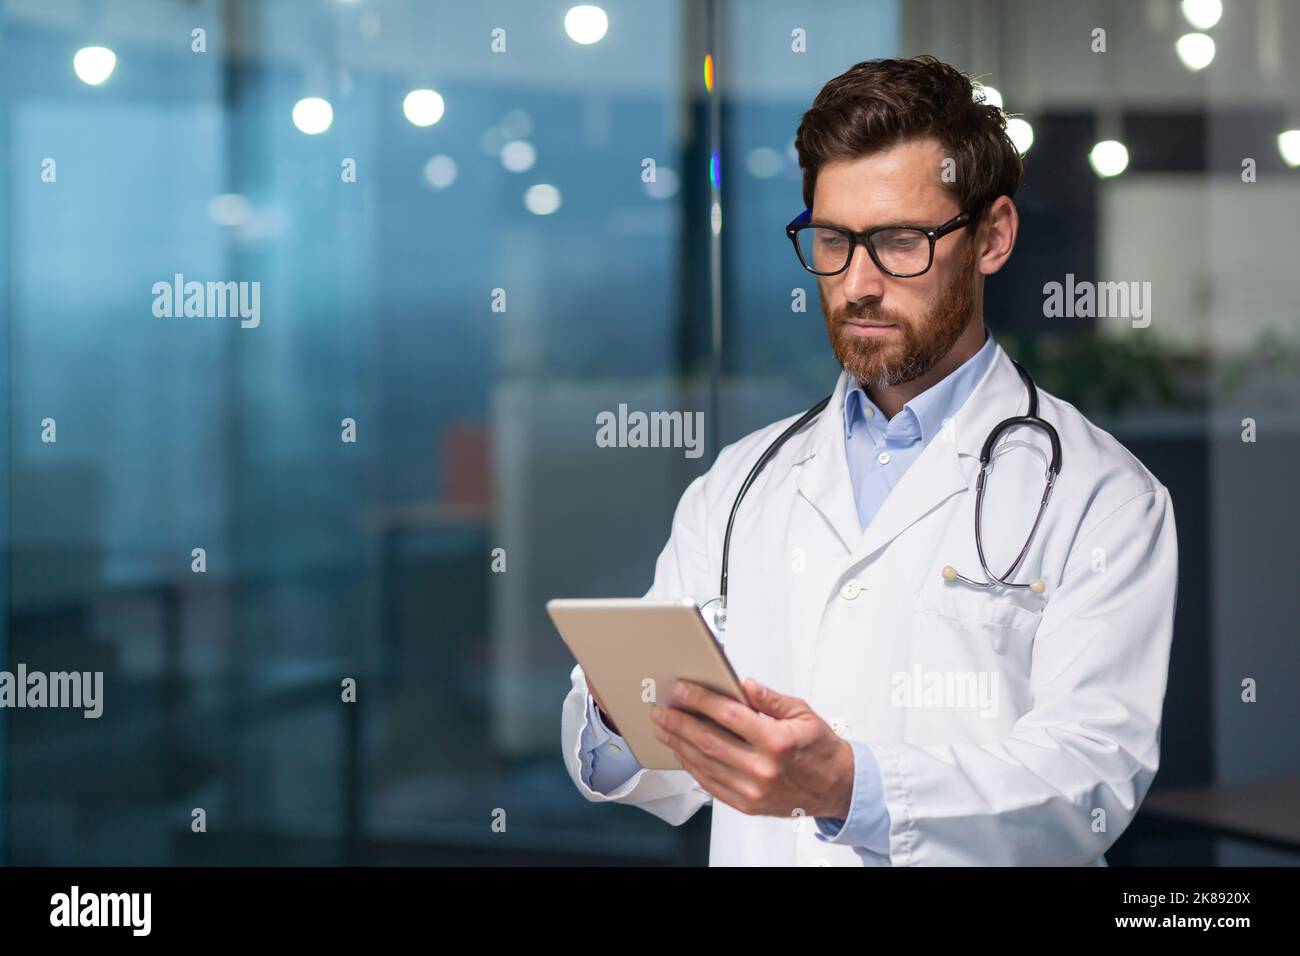 Ein seriöser und nachdenklicher Arzt liest medizinische Informationen von einem Tablet-Computer, ein Mann in einem medizinischen Kleid verwendet eine Tablette, konzentriert sich, gibt Nachrichten ein und überprüft die Patientenakte Stockfoto